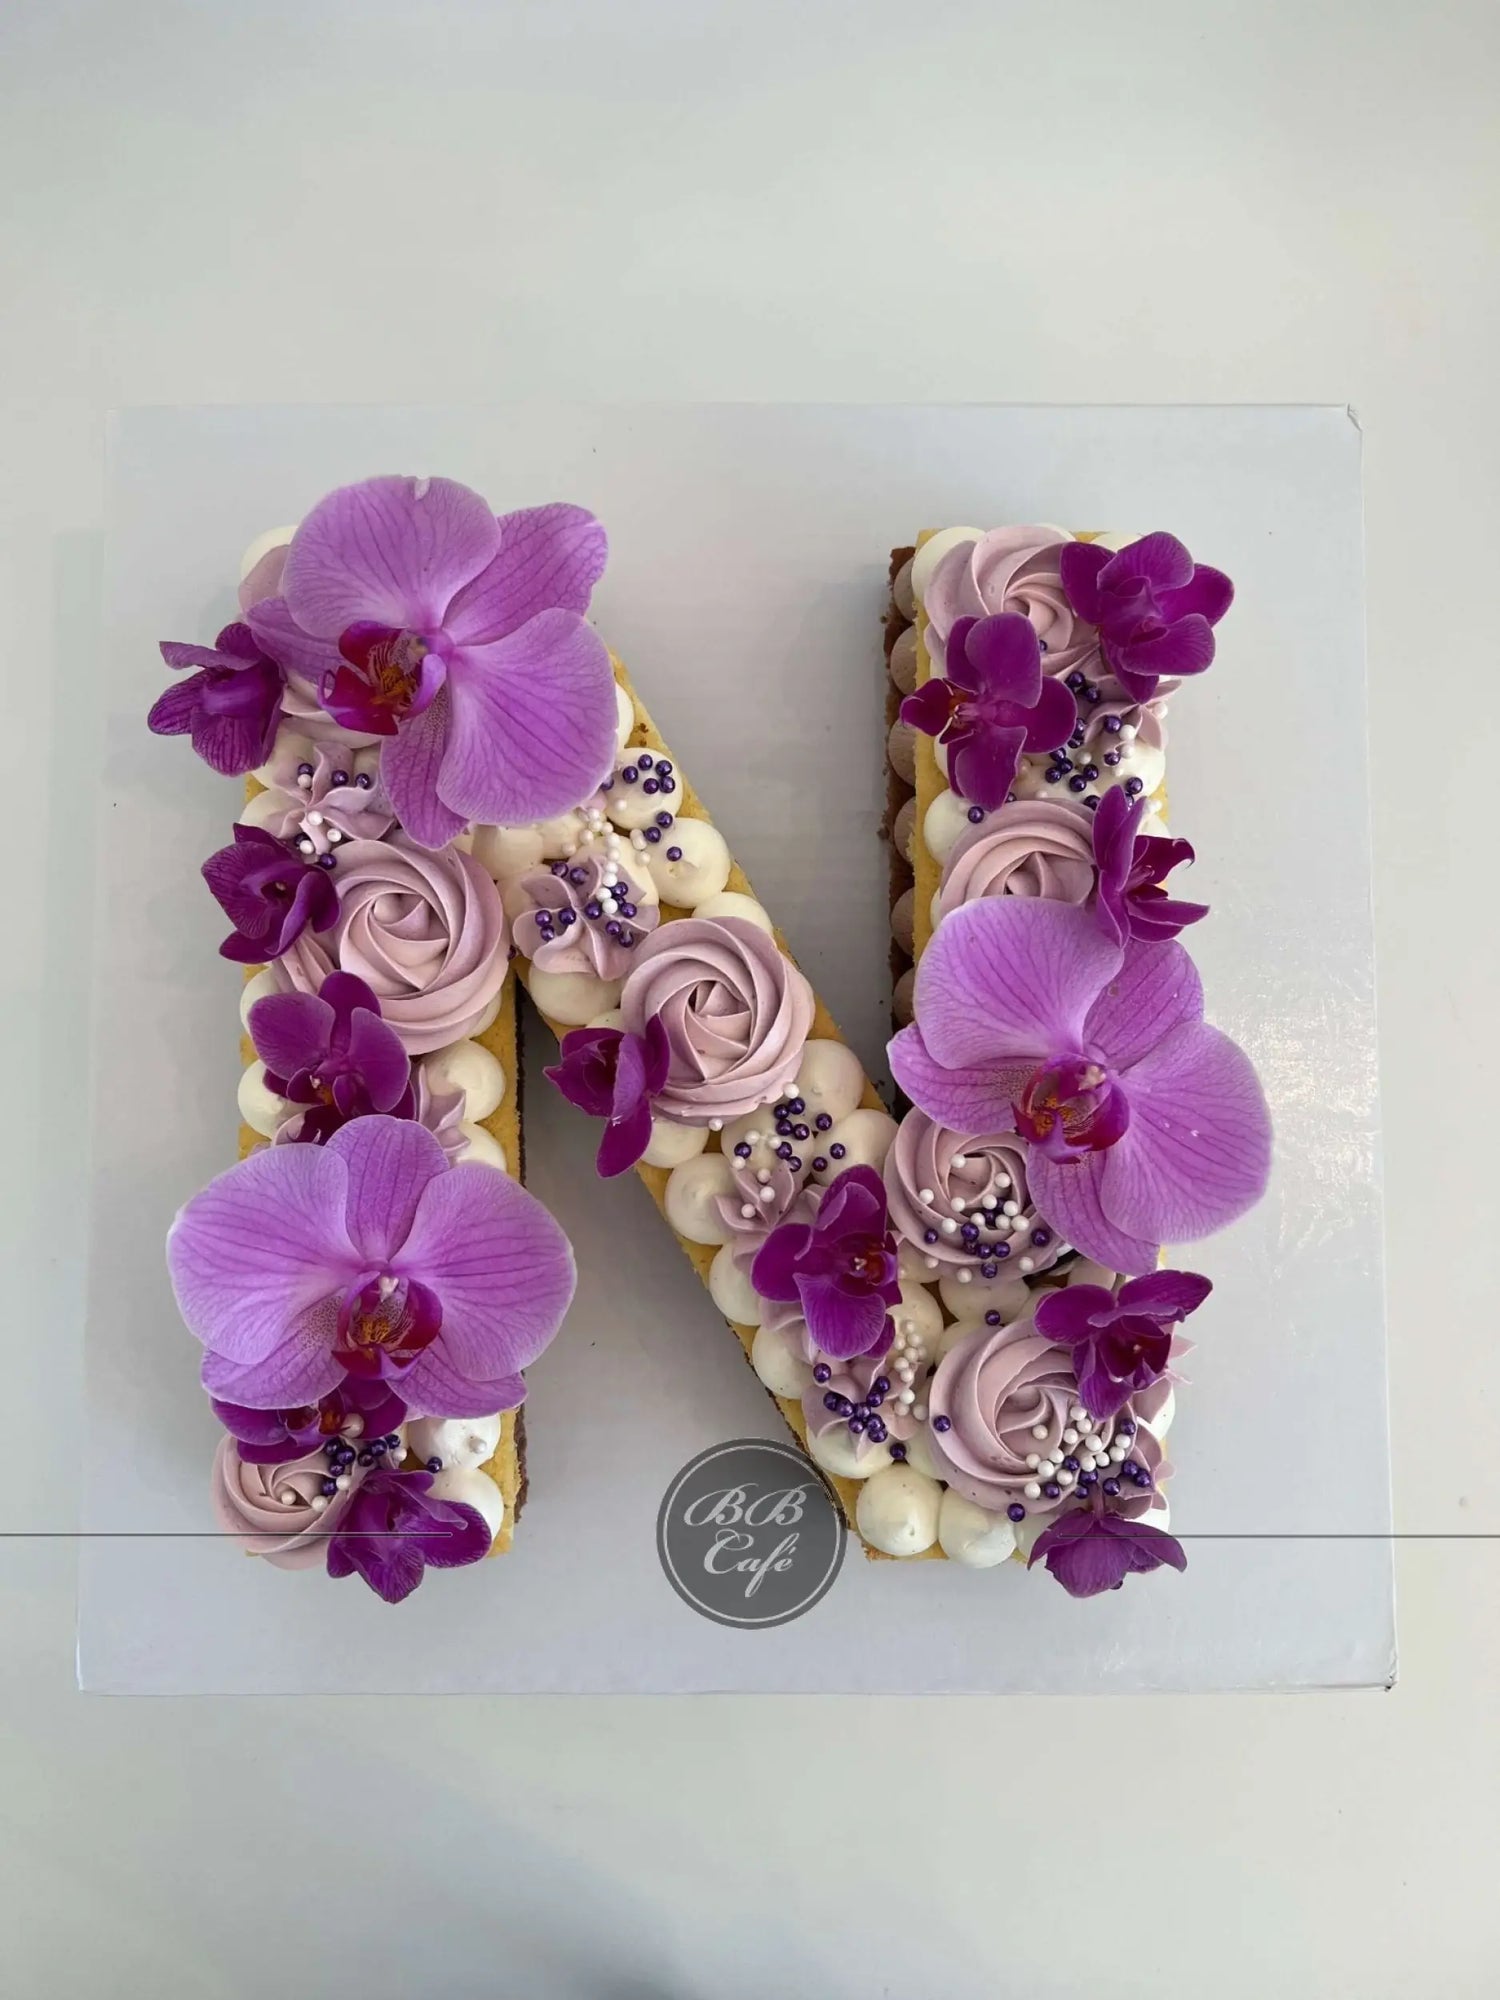 Letter/number cake in buttercream - custom